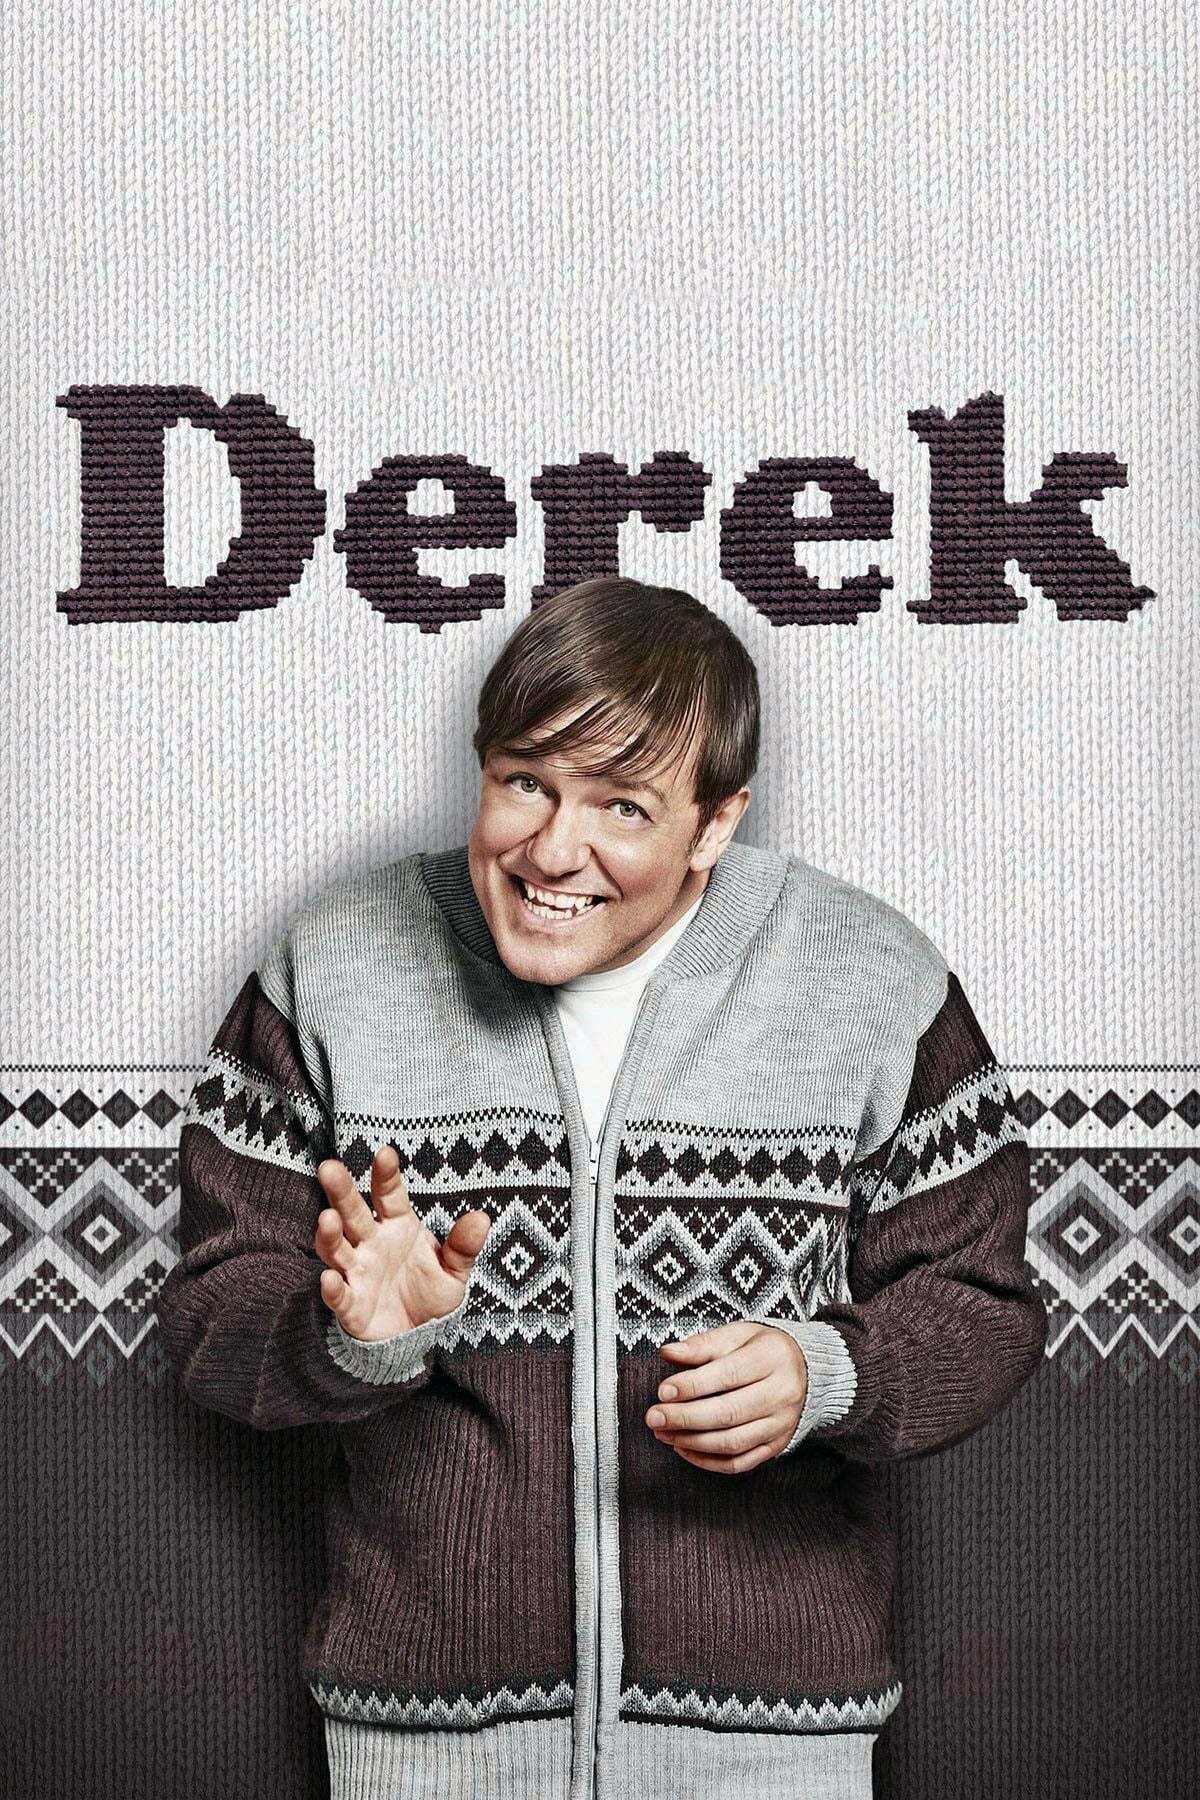 Derek Special film